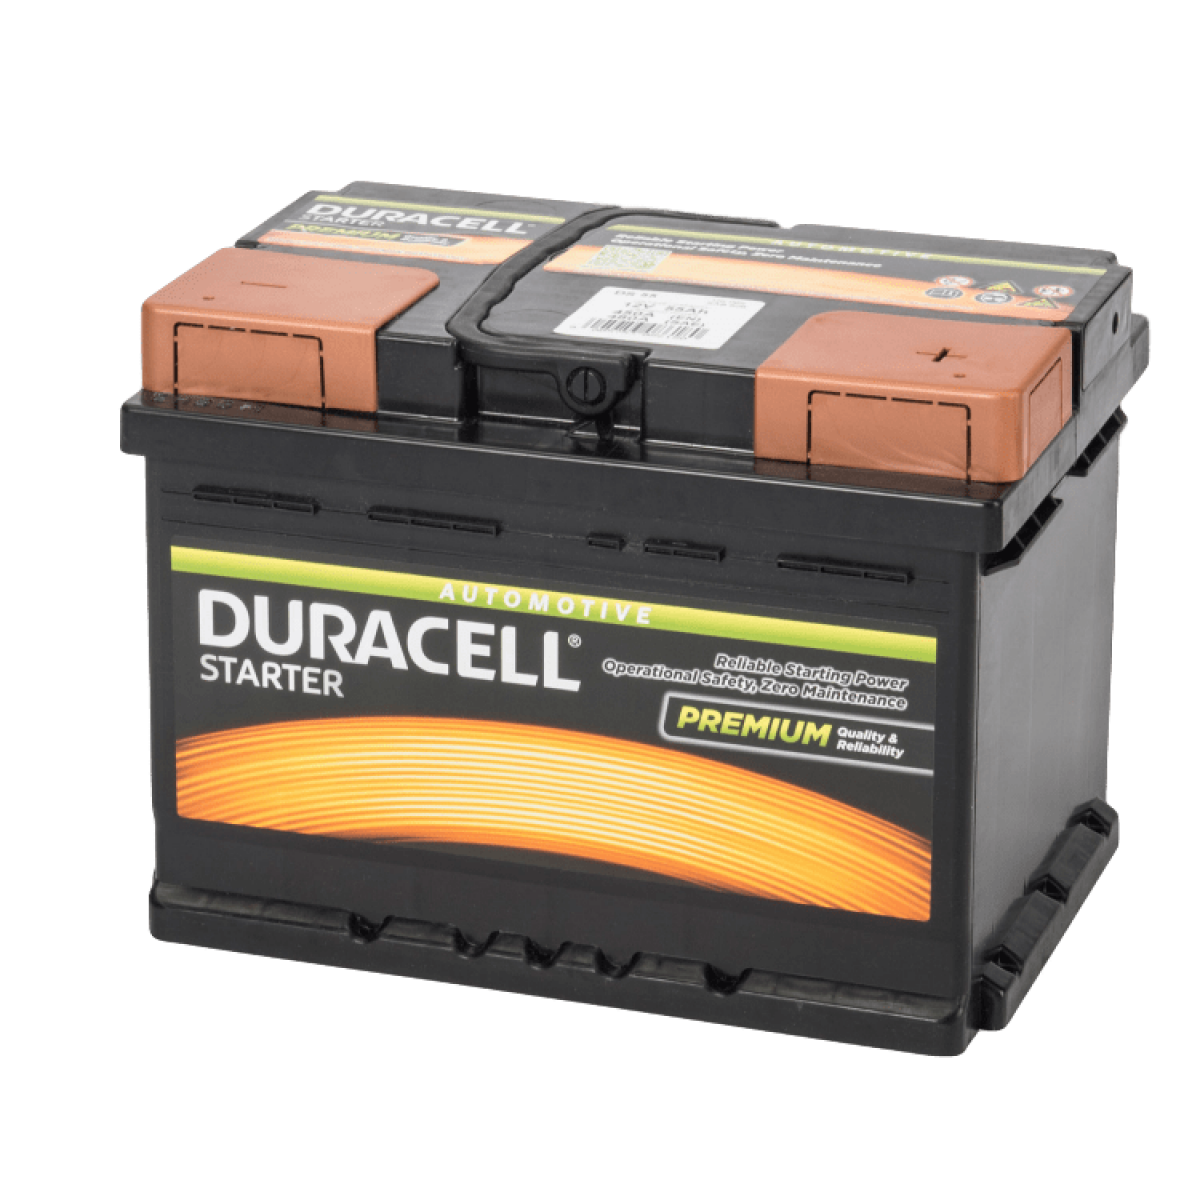 Duracell DURACELL STARTER Autobatterie 12V 55Ah Batterie PKW KFZ DS55 